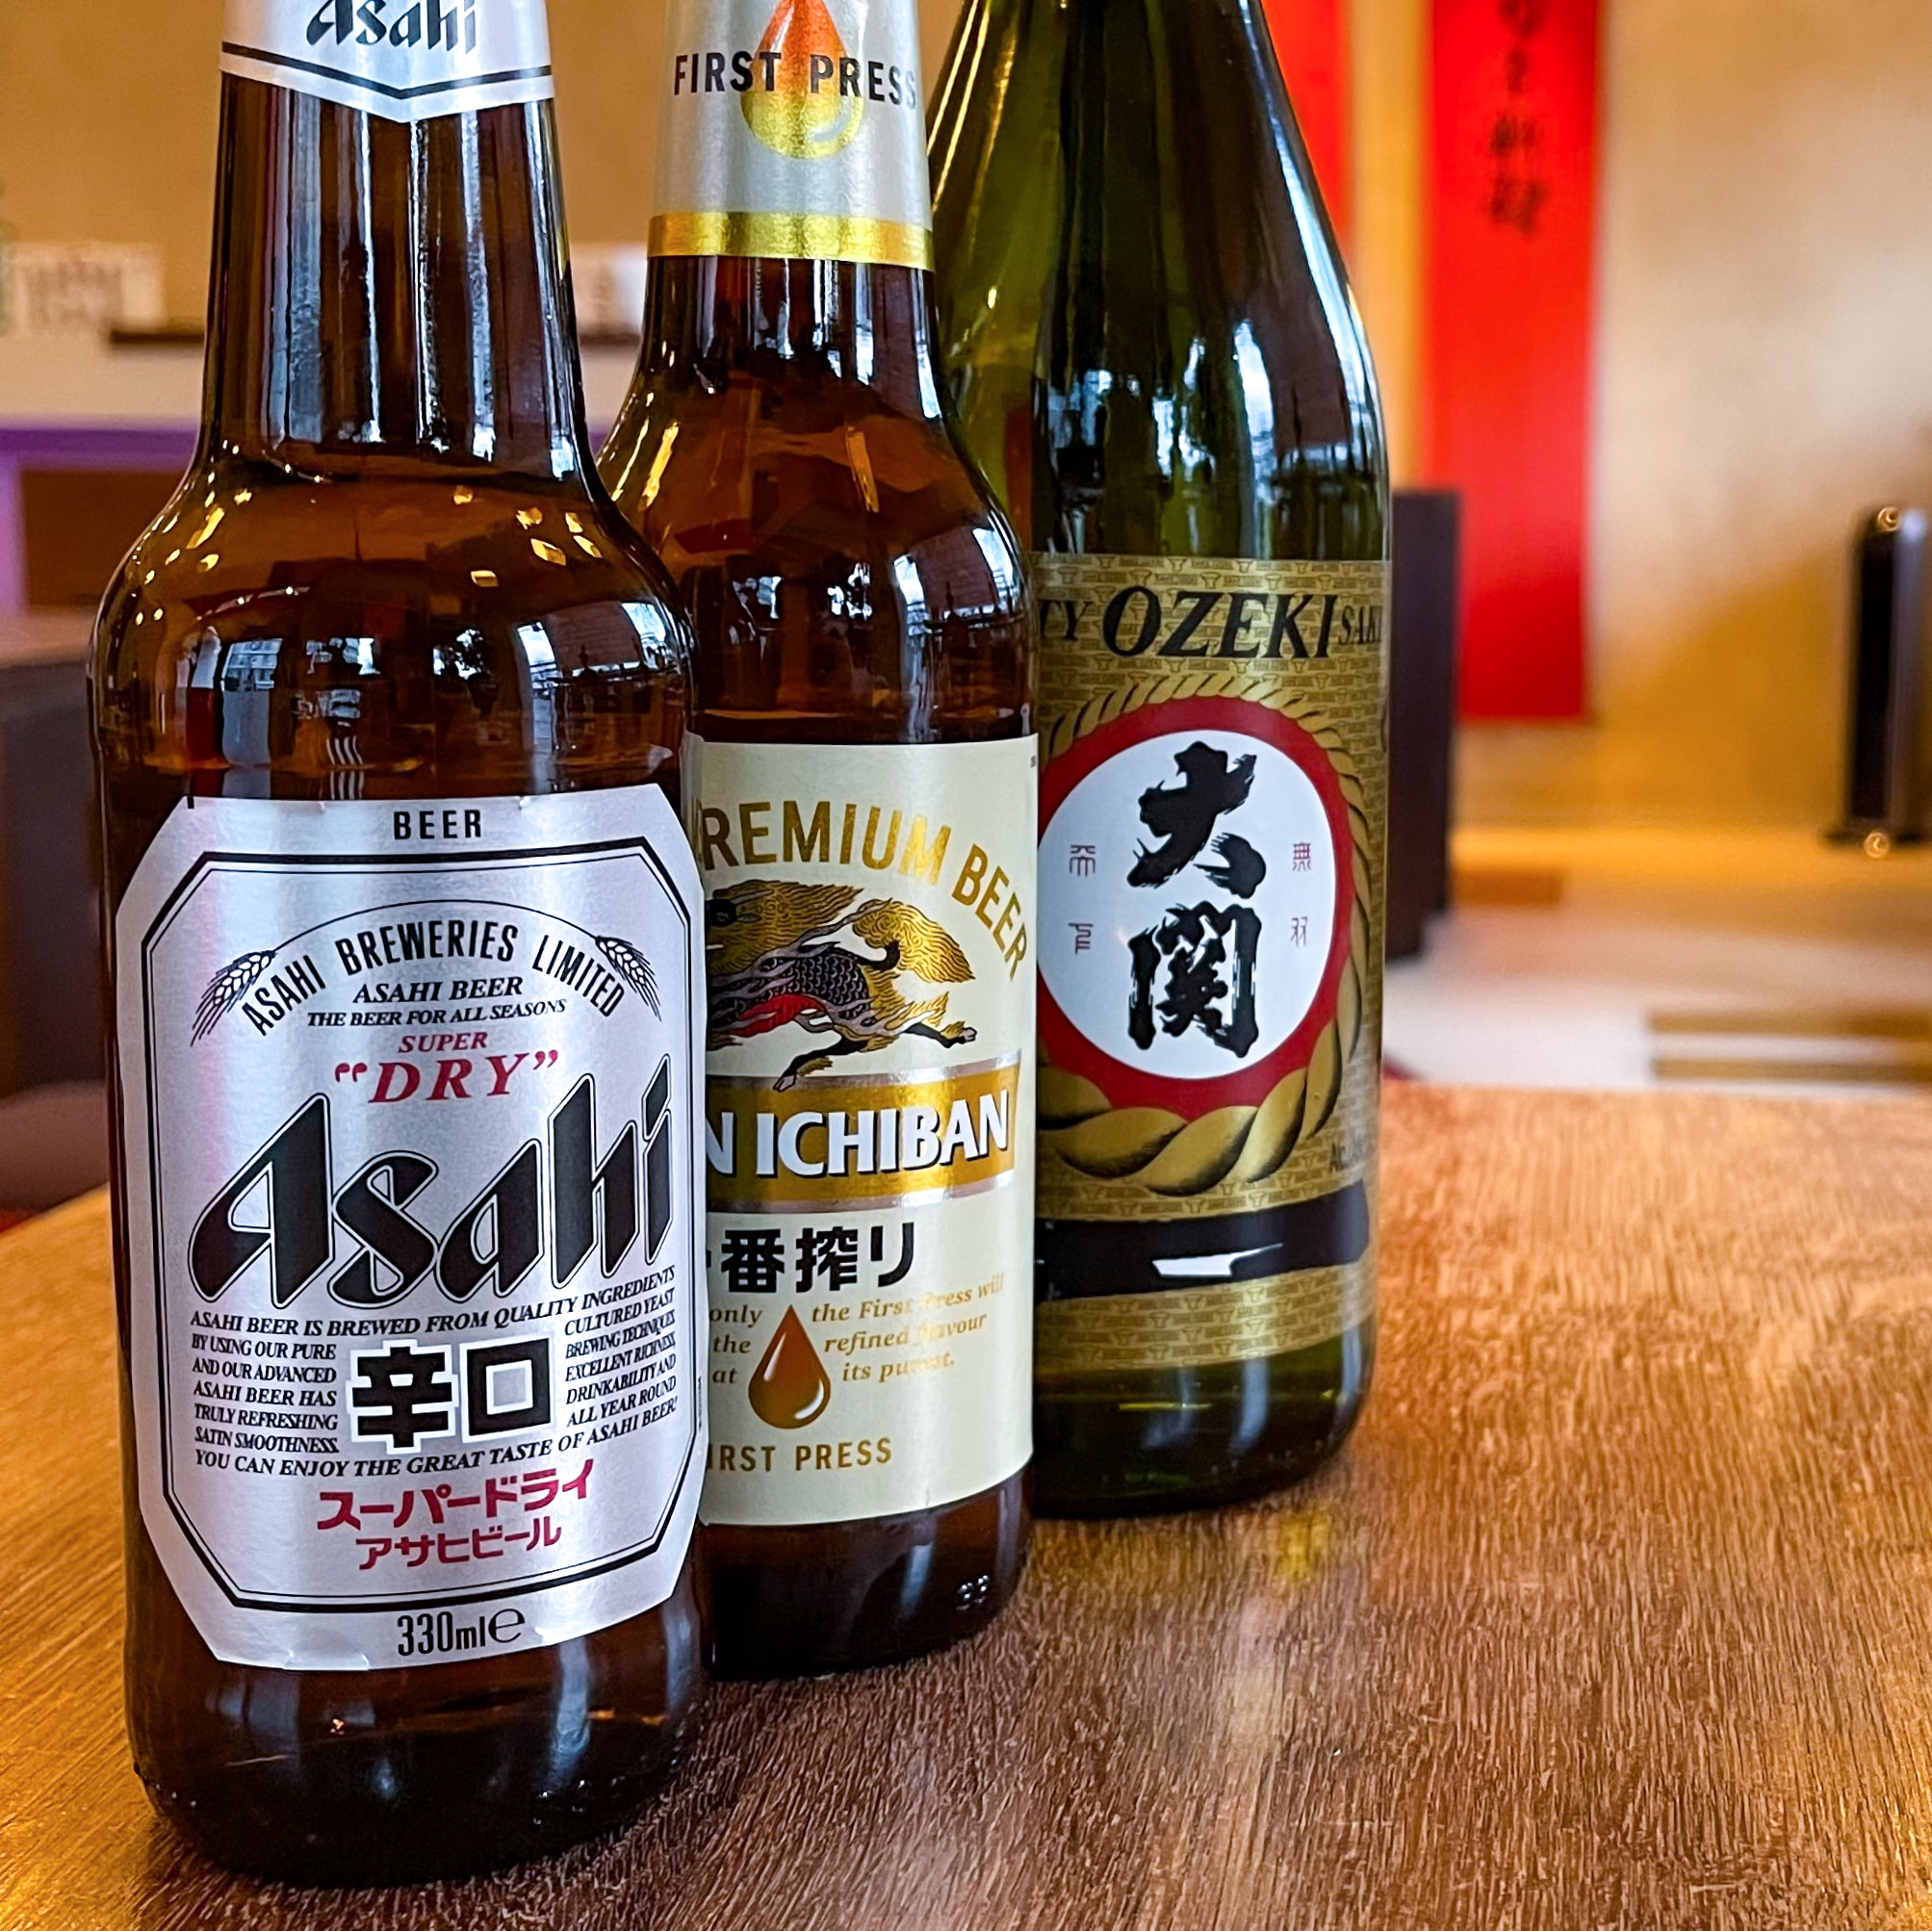 Asahi and Kirin beers, Ozeki Sake at Sushi Berlin